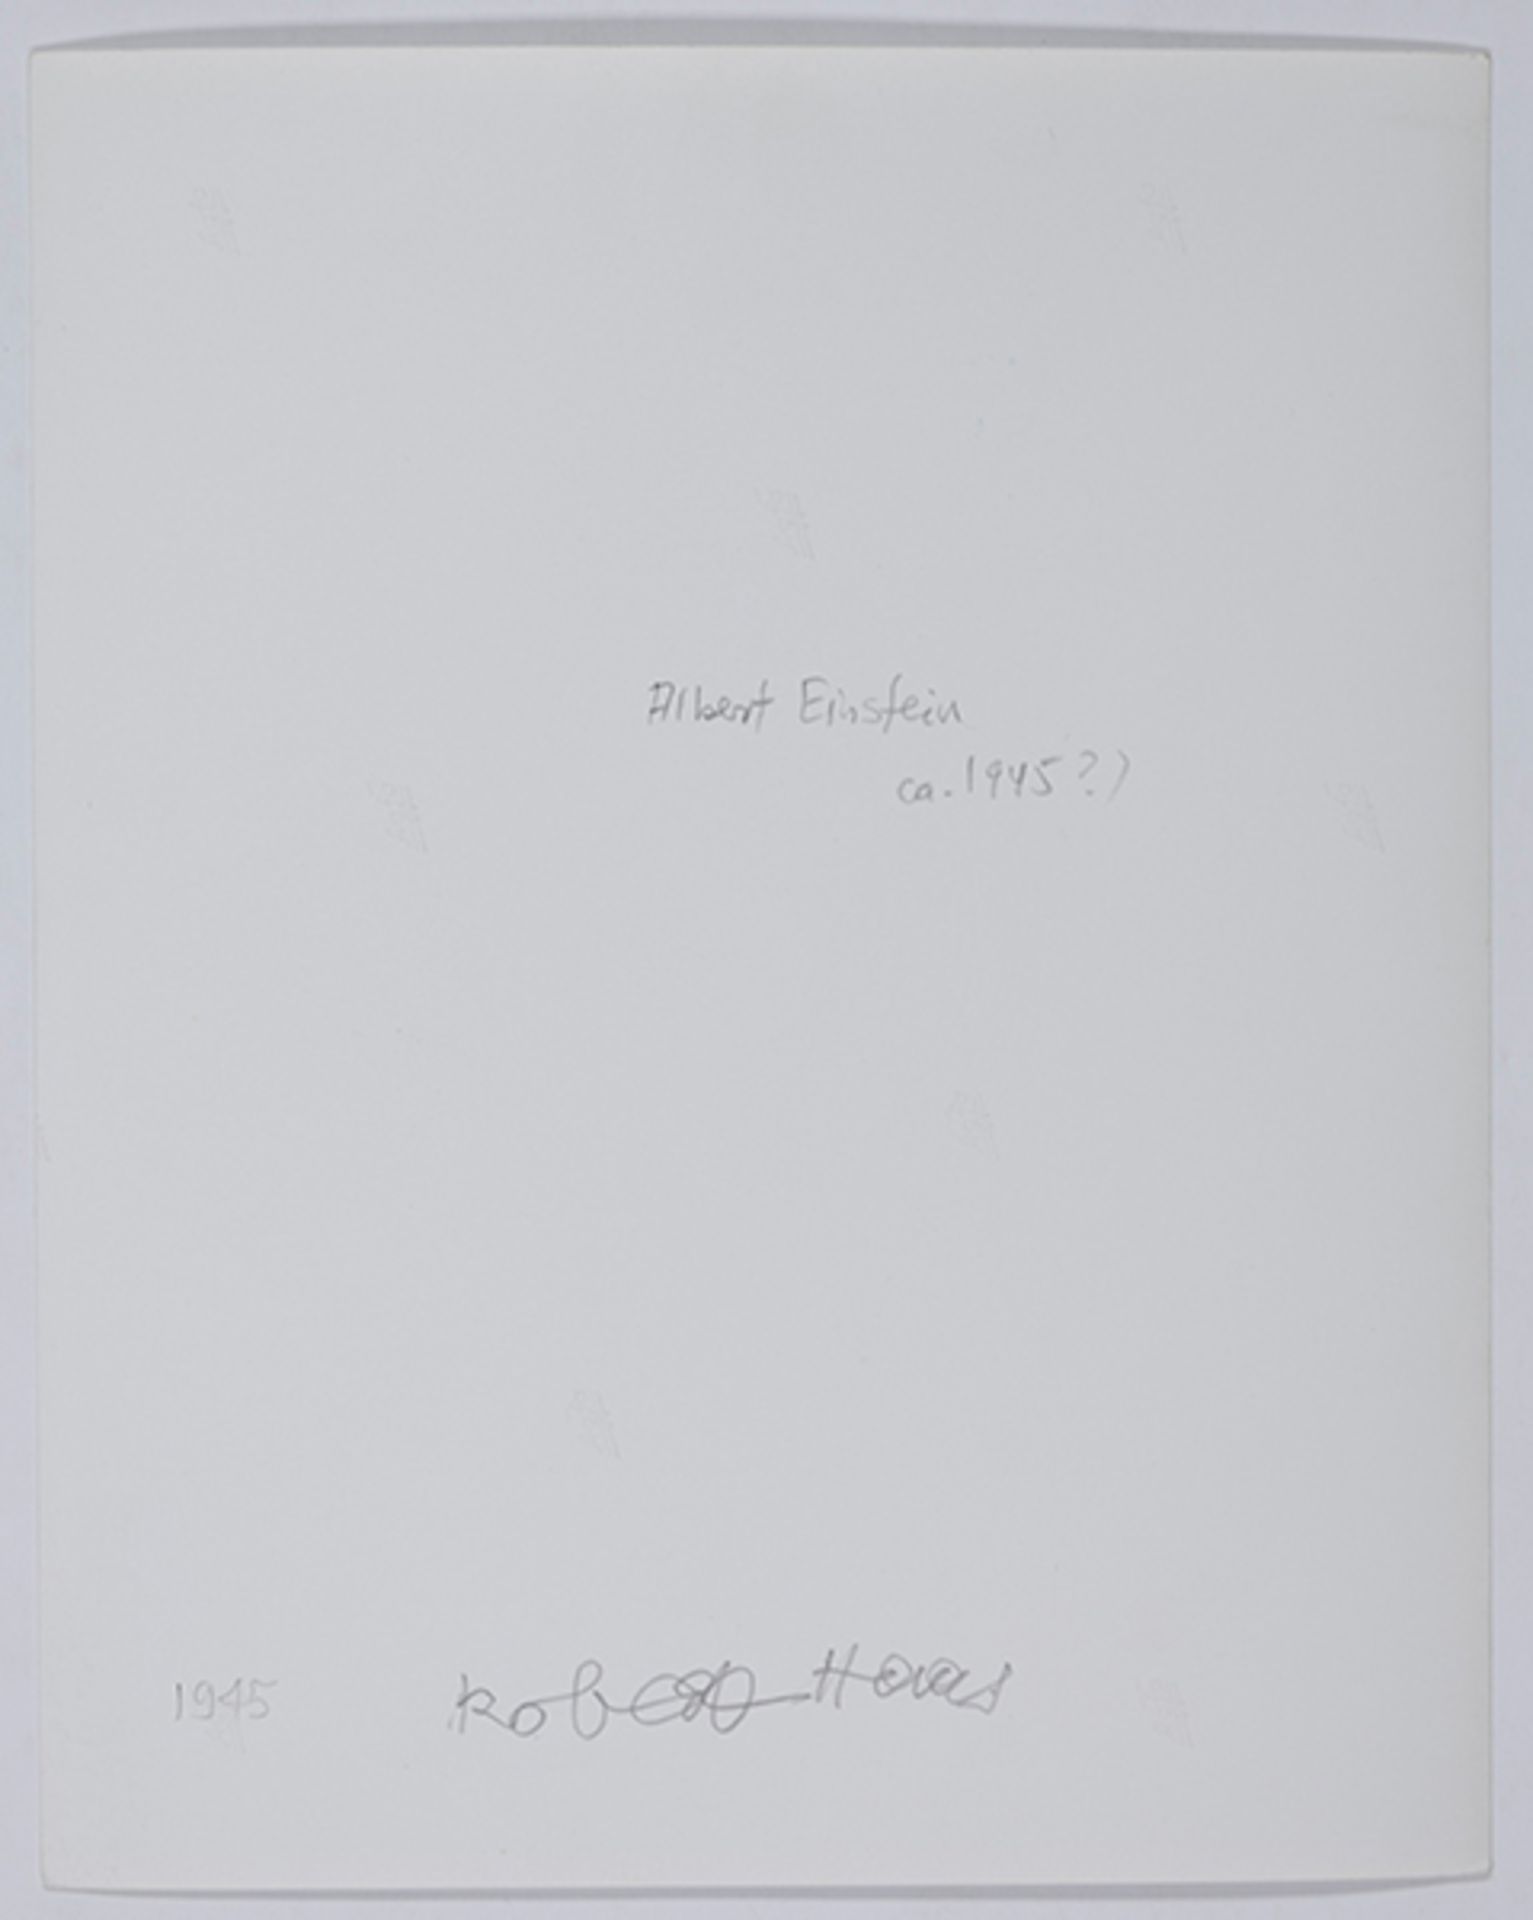 Haas, Robert. Albert Einstein. Princeton. Original-Photographie. Vintage. Bromsilbergelatineabzug. - Bild 2 aus 3